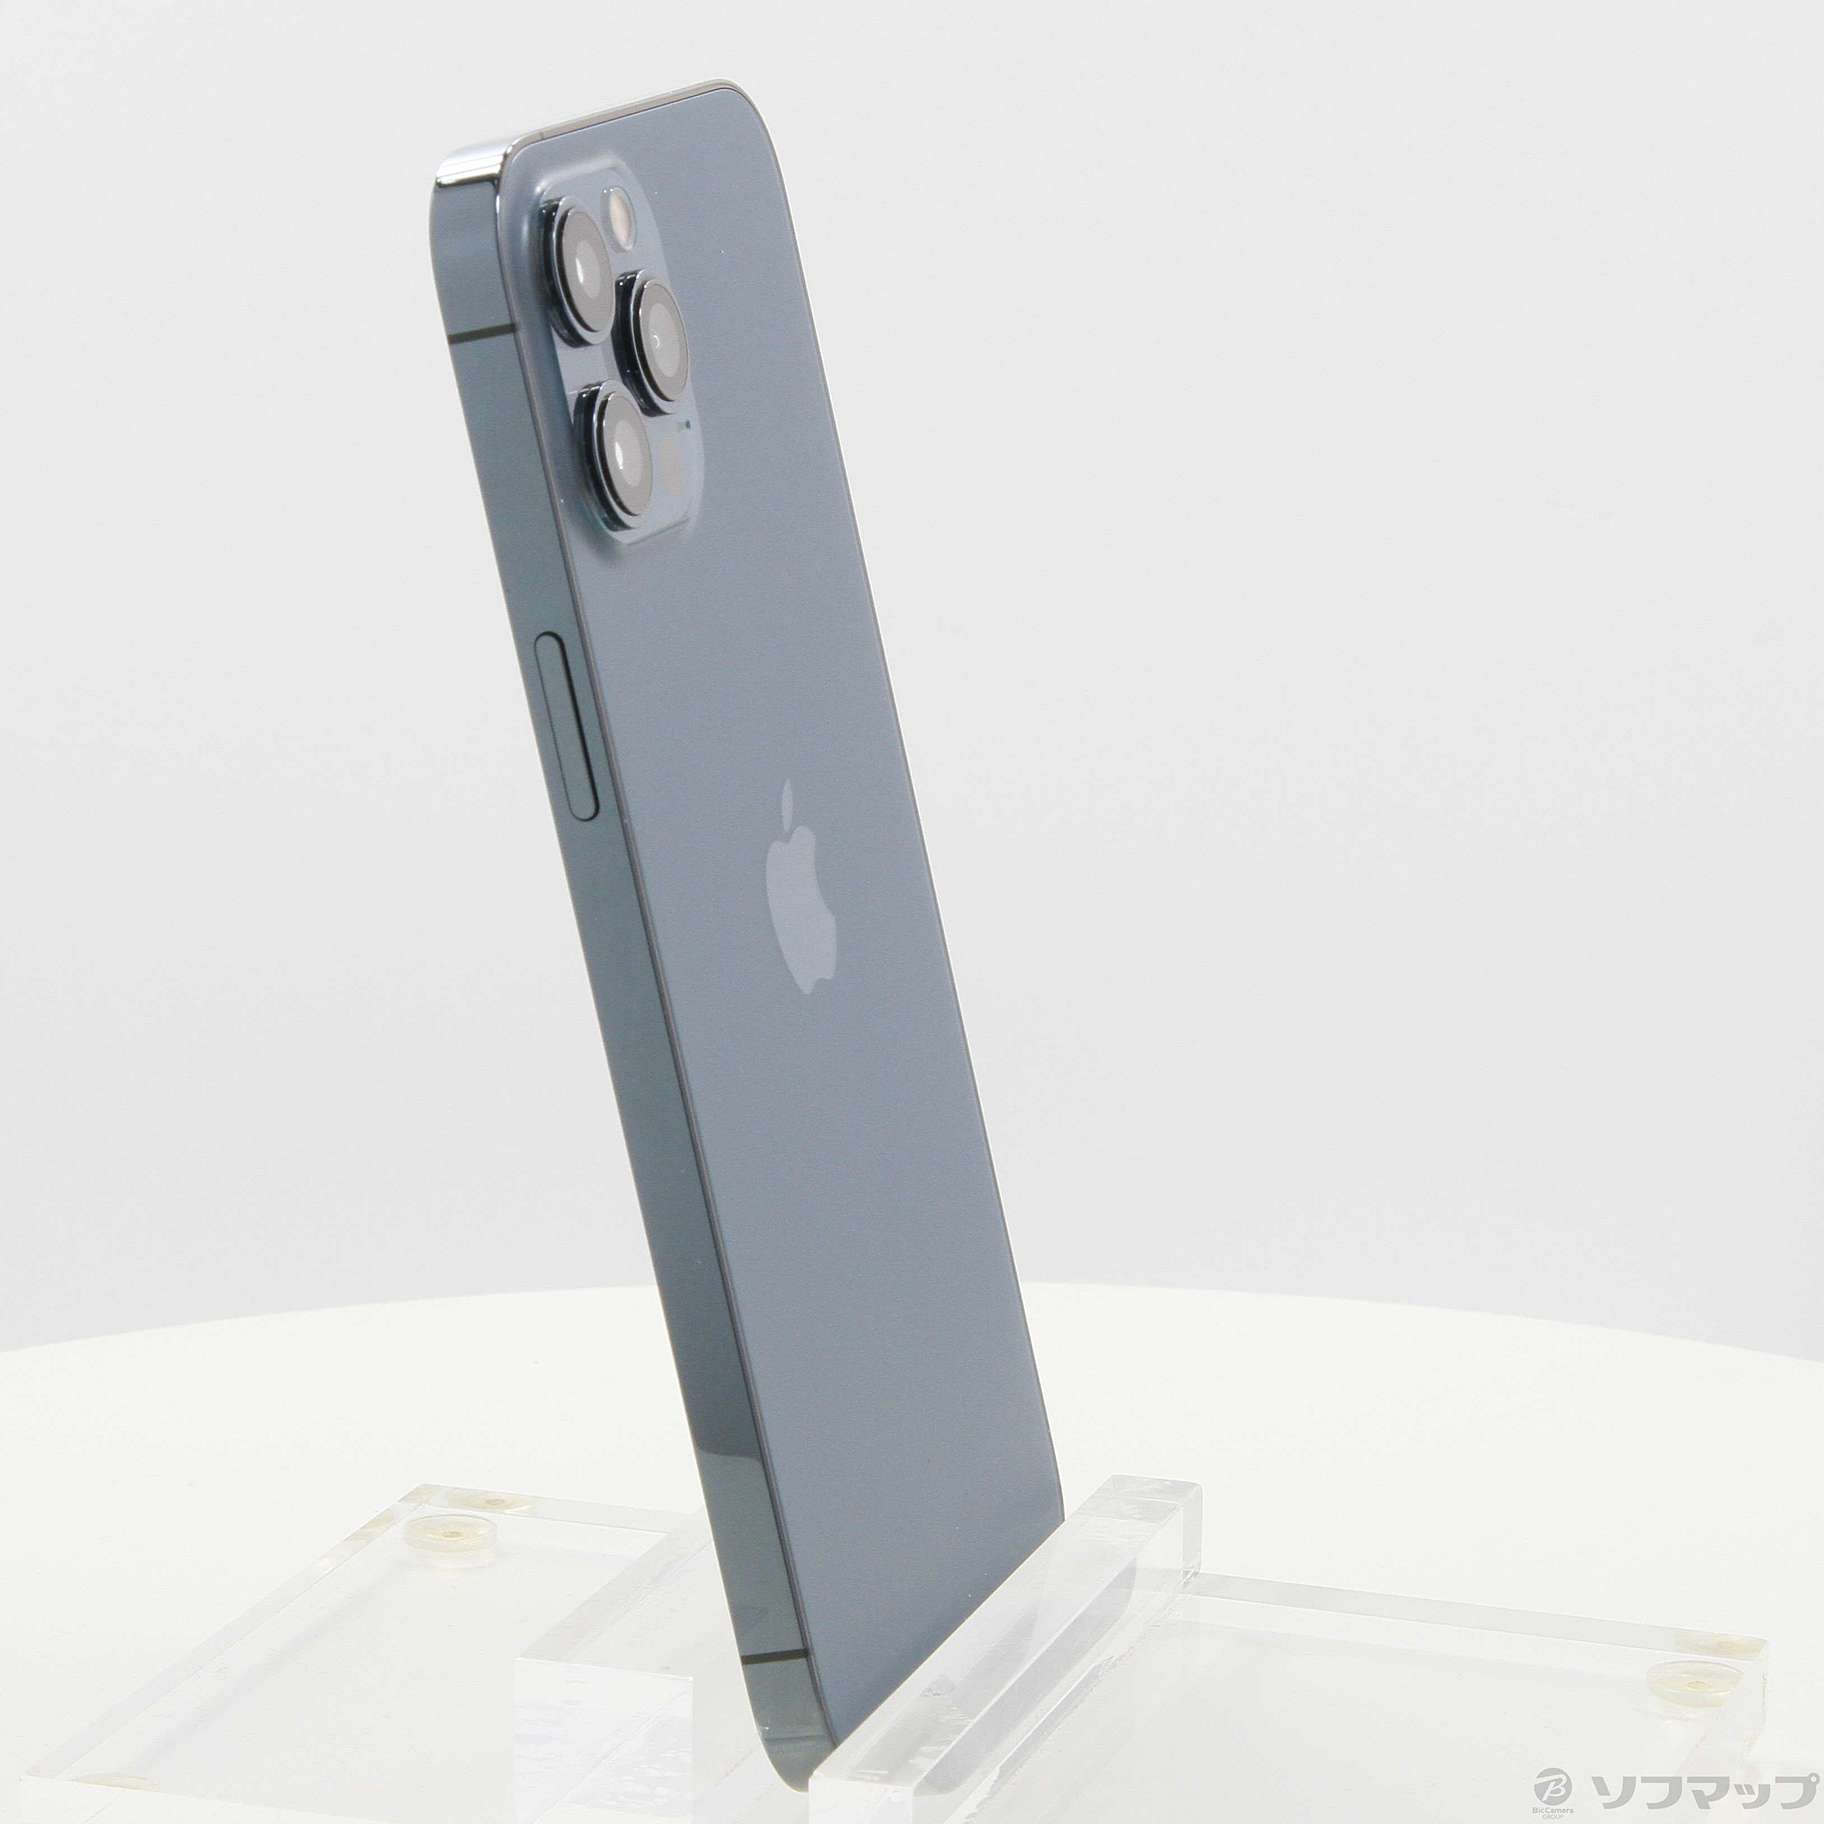 iPhone12 Pro Max 512GB パシフィックブルー MGD63J／A SIMフリー